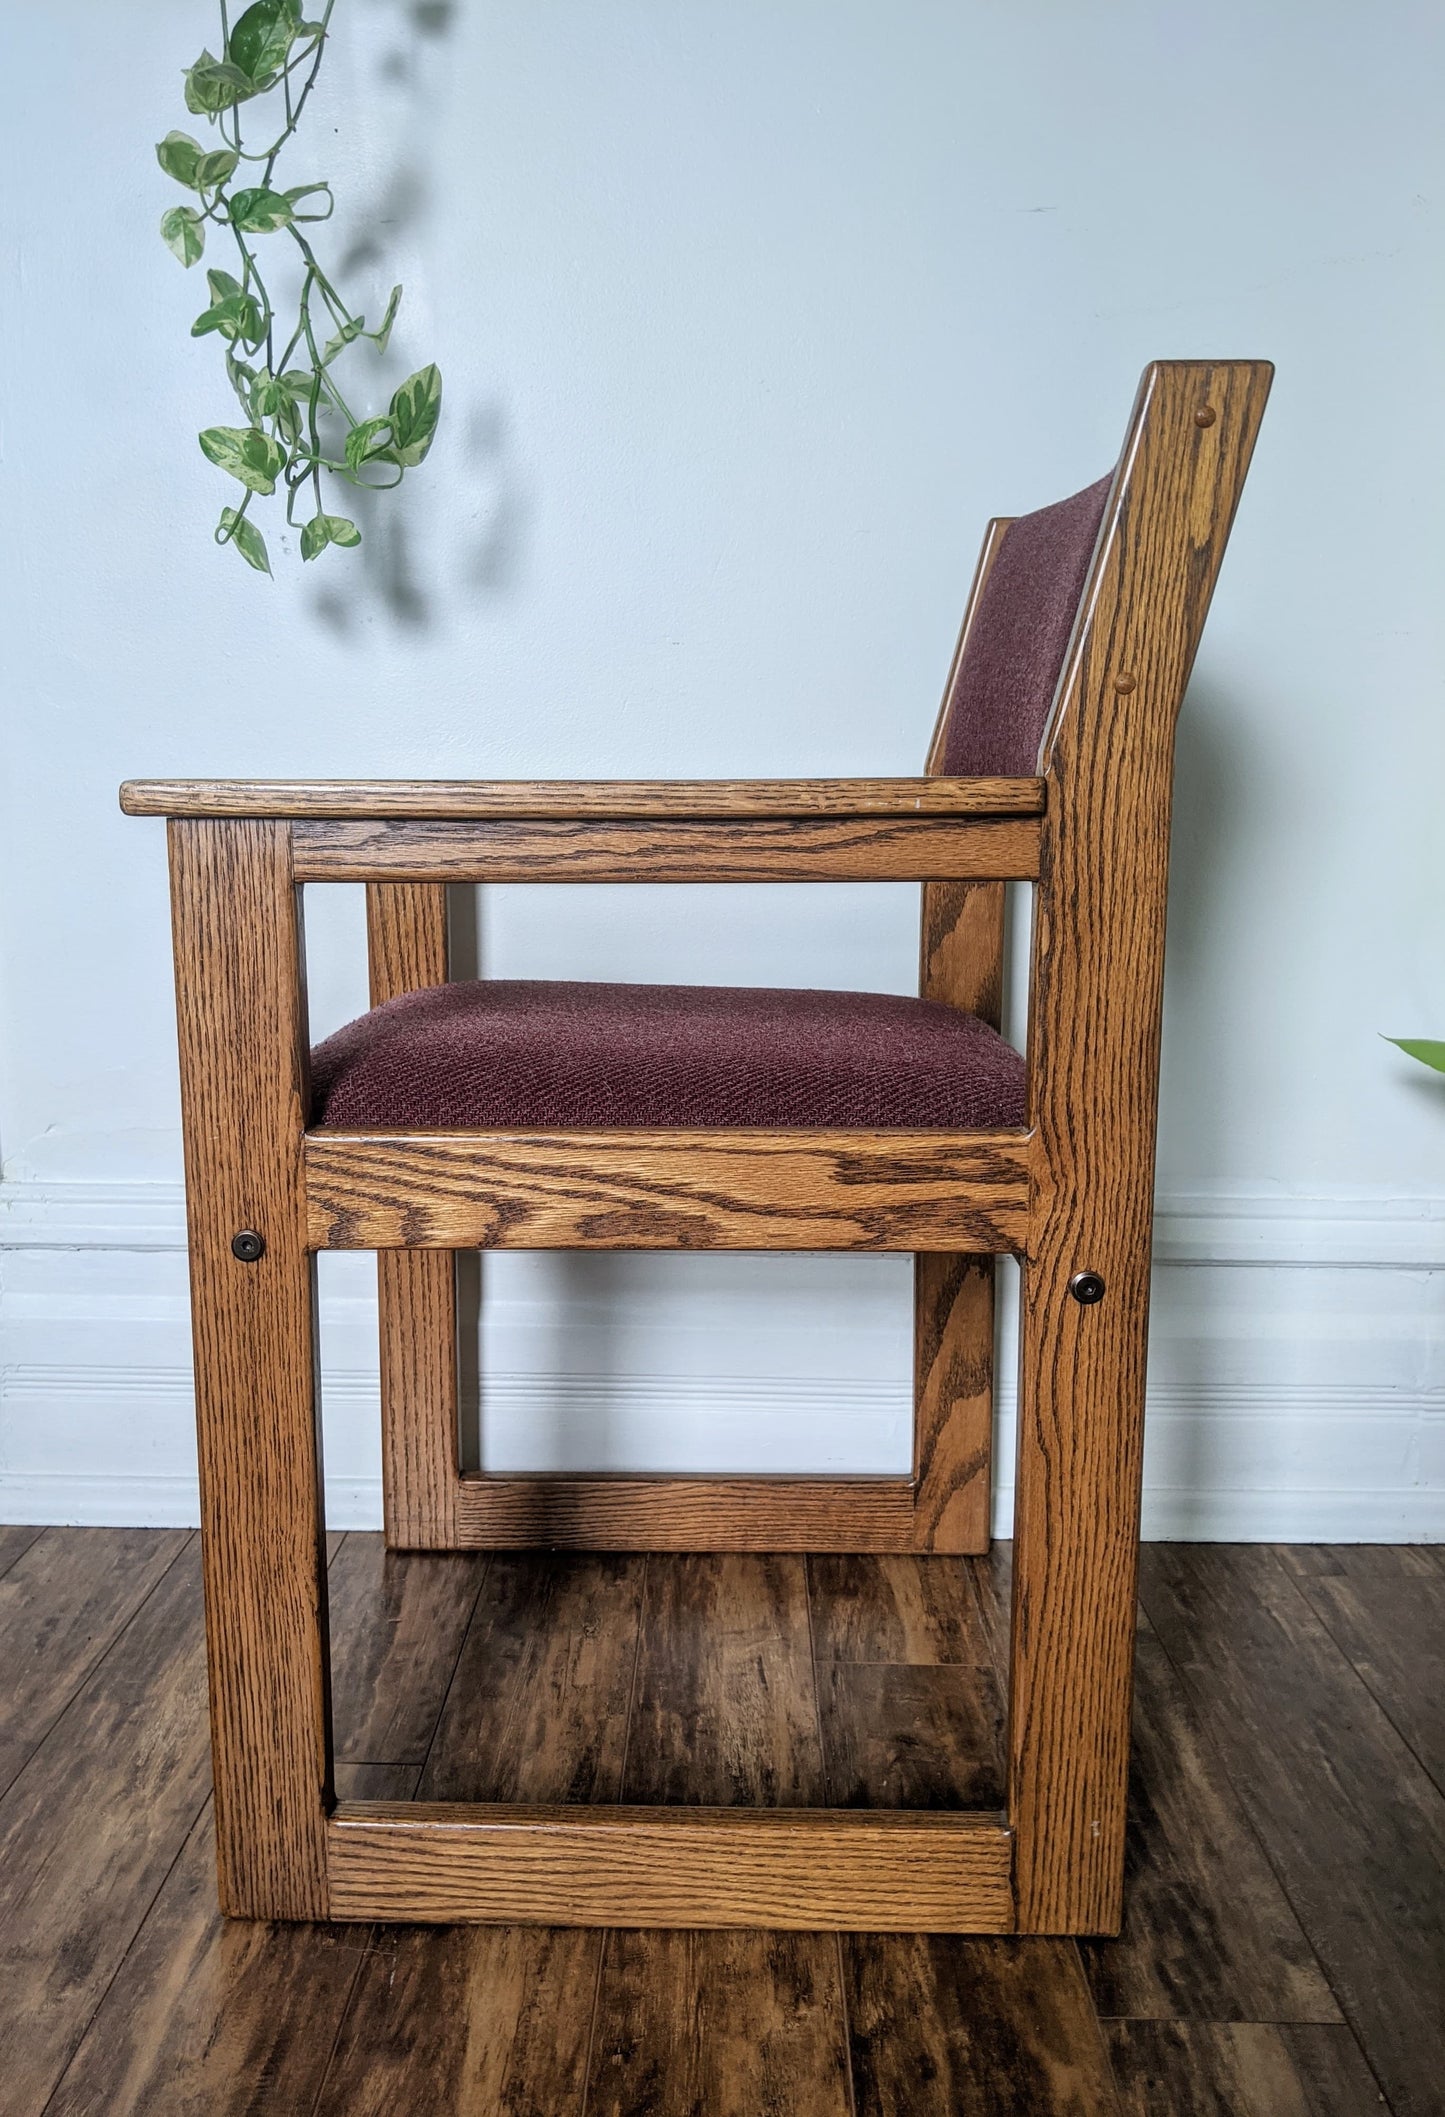 The Sørensen Cubist Chair